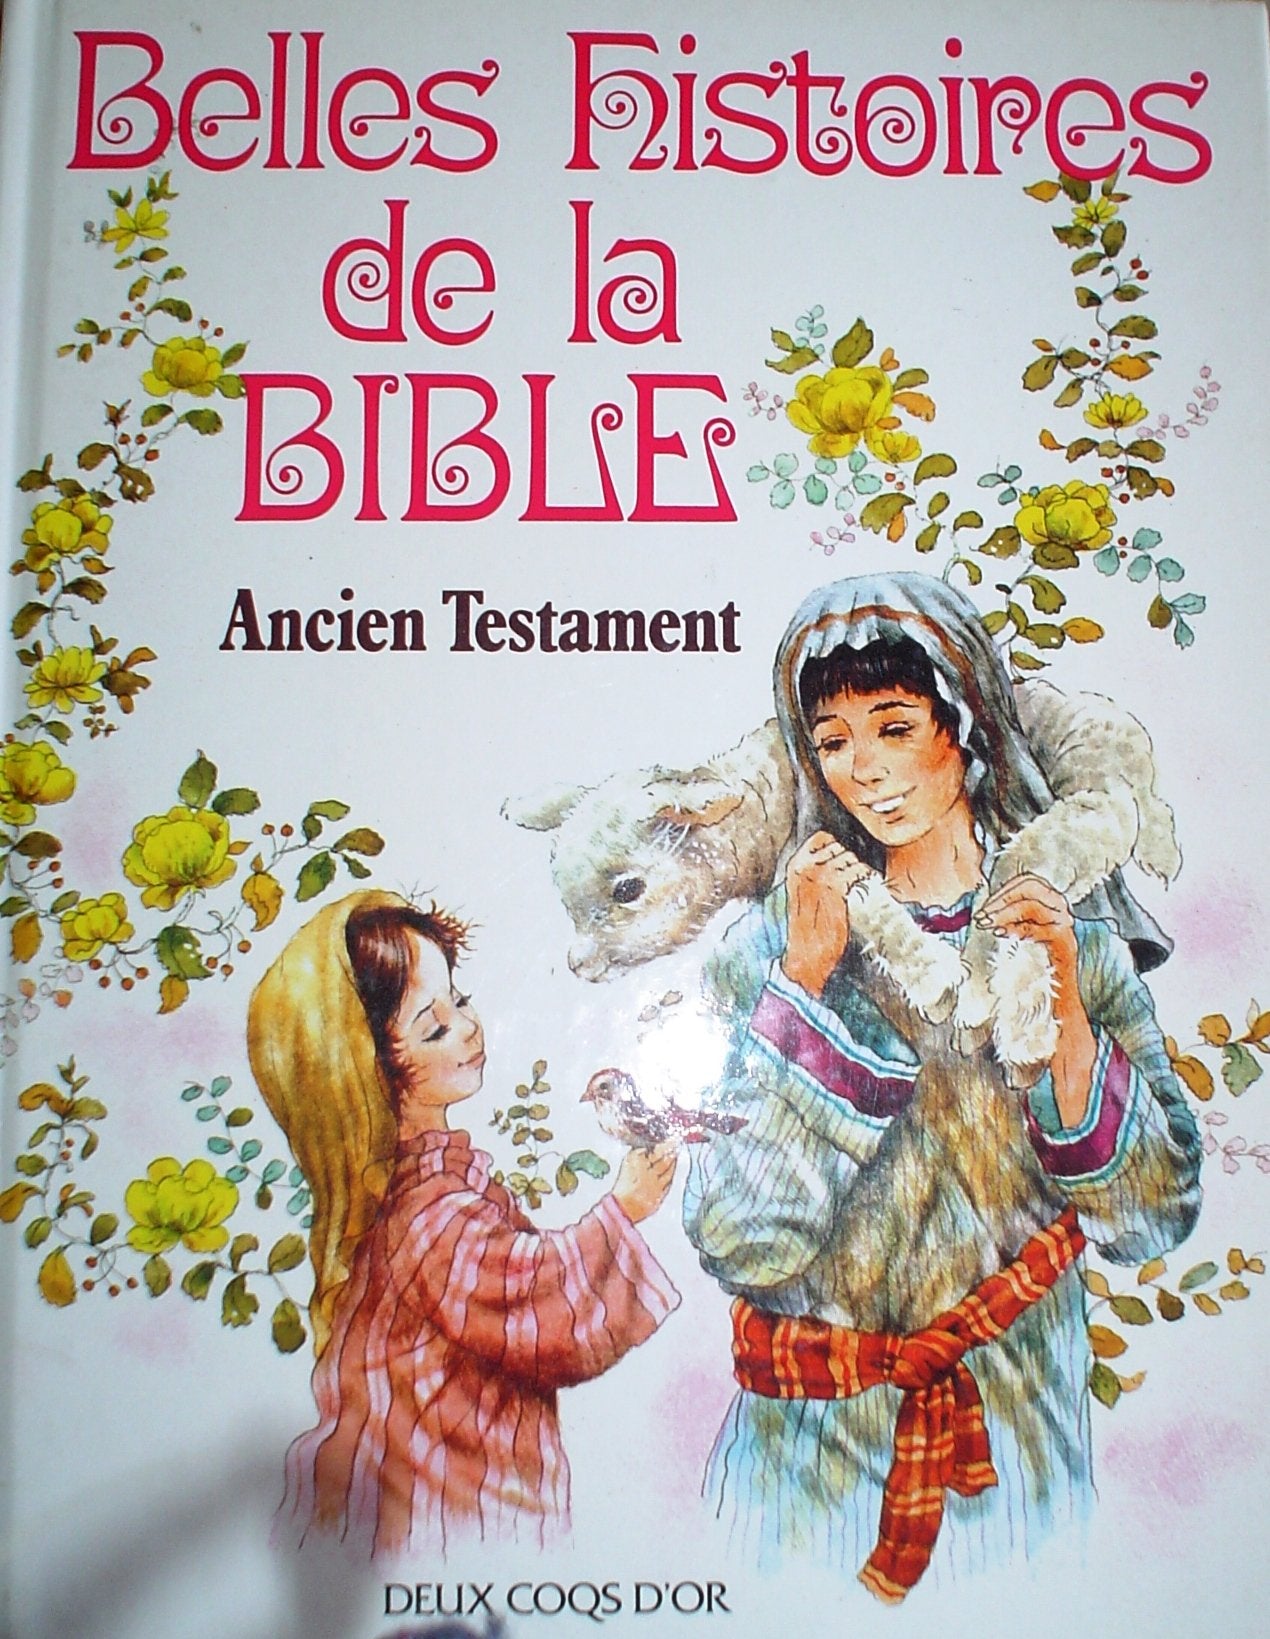 Belles histoires de la Bible : Ancient Testament